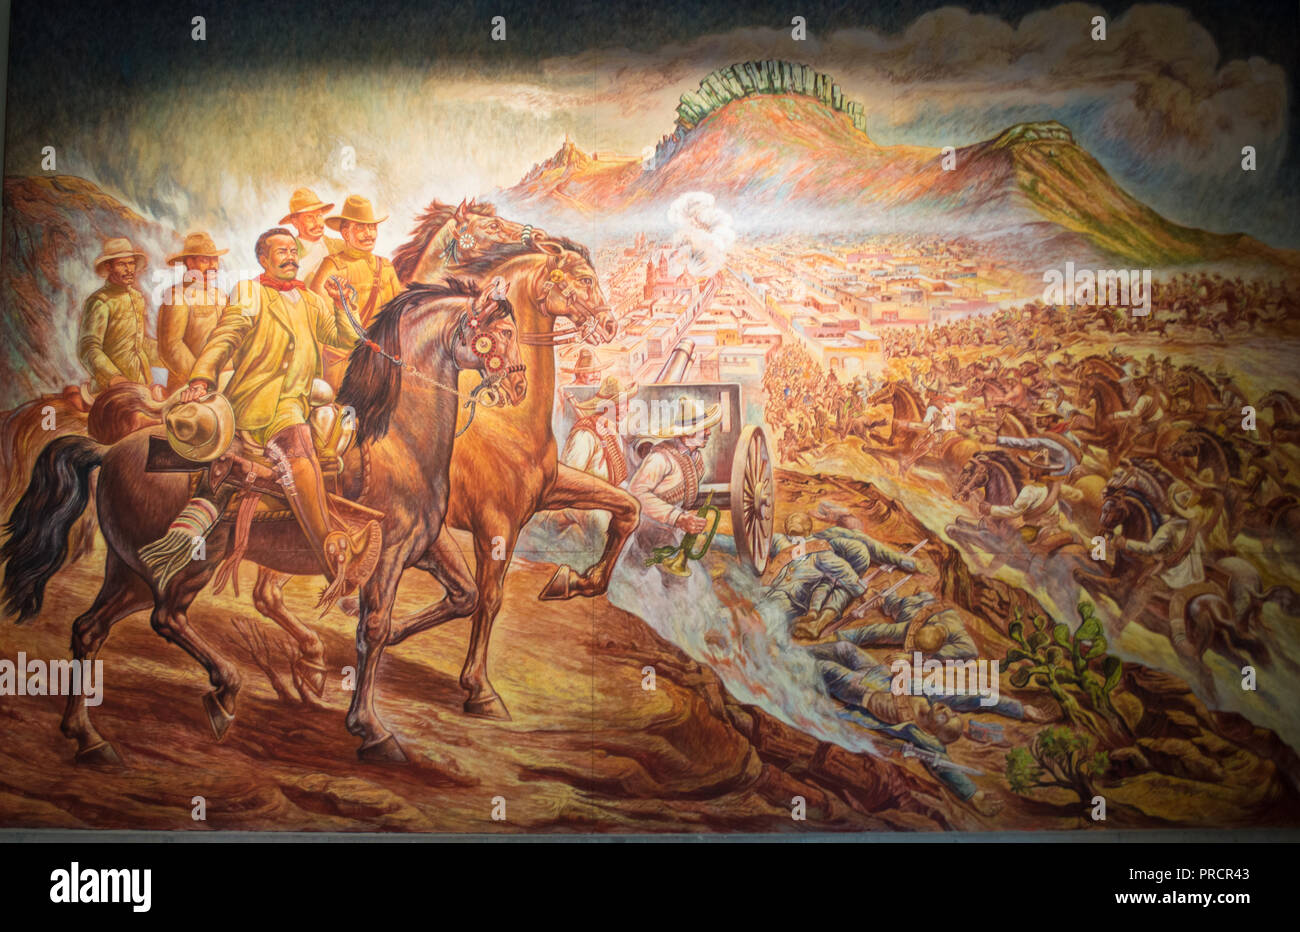 Murale impressionnante par Ángel Boliver au château de Chapultepec, au Mexique. Il dépeint la bataille de Zacatecas. Banque D'Images